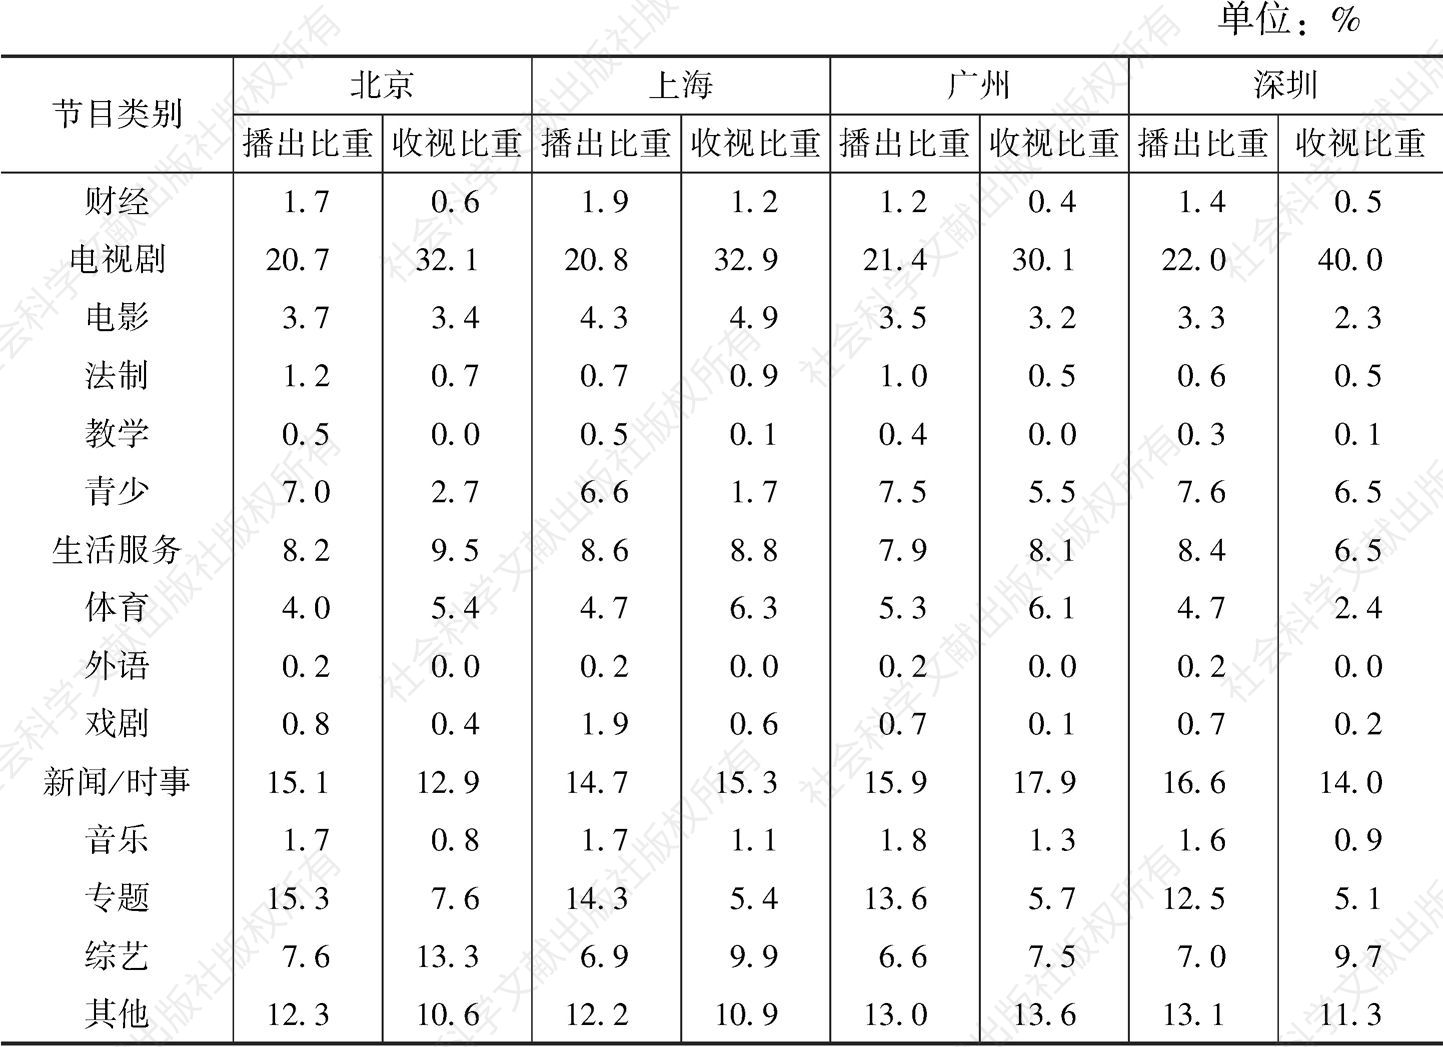 2019年北京/上海/广州/深圳市场各类节目的播出比重和收视比重